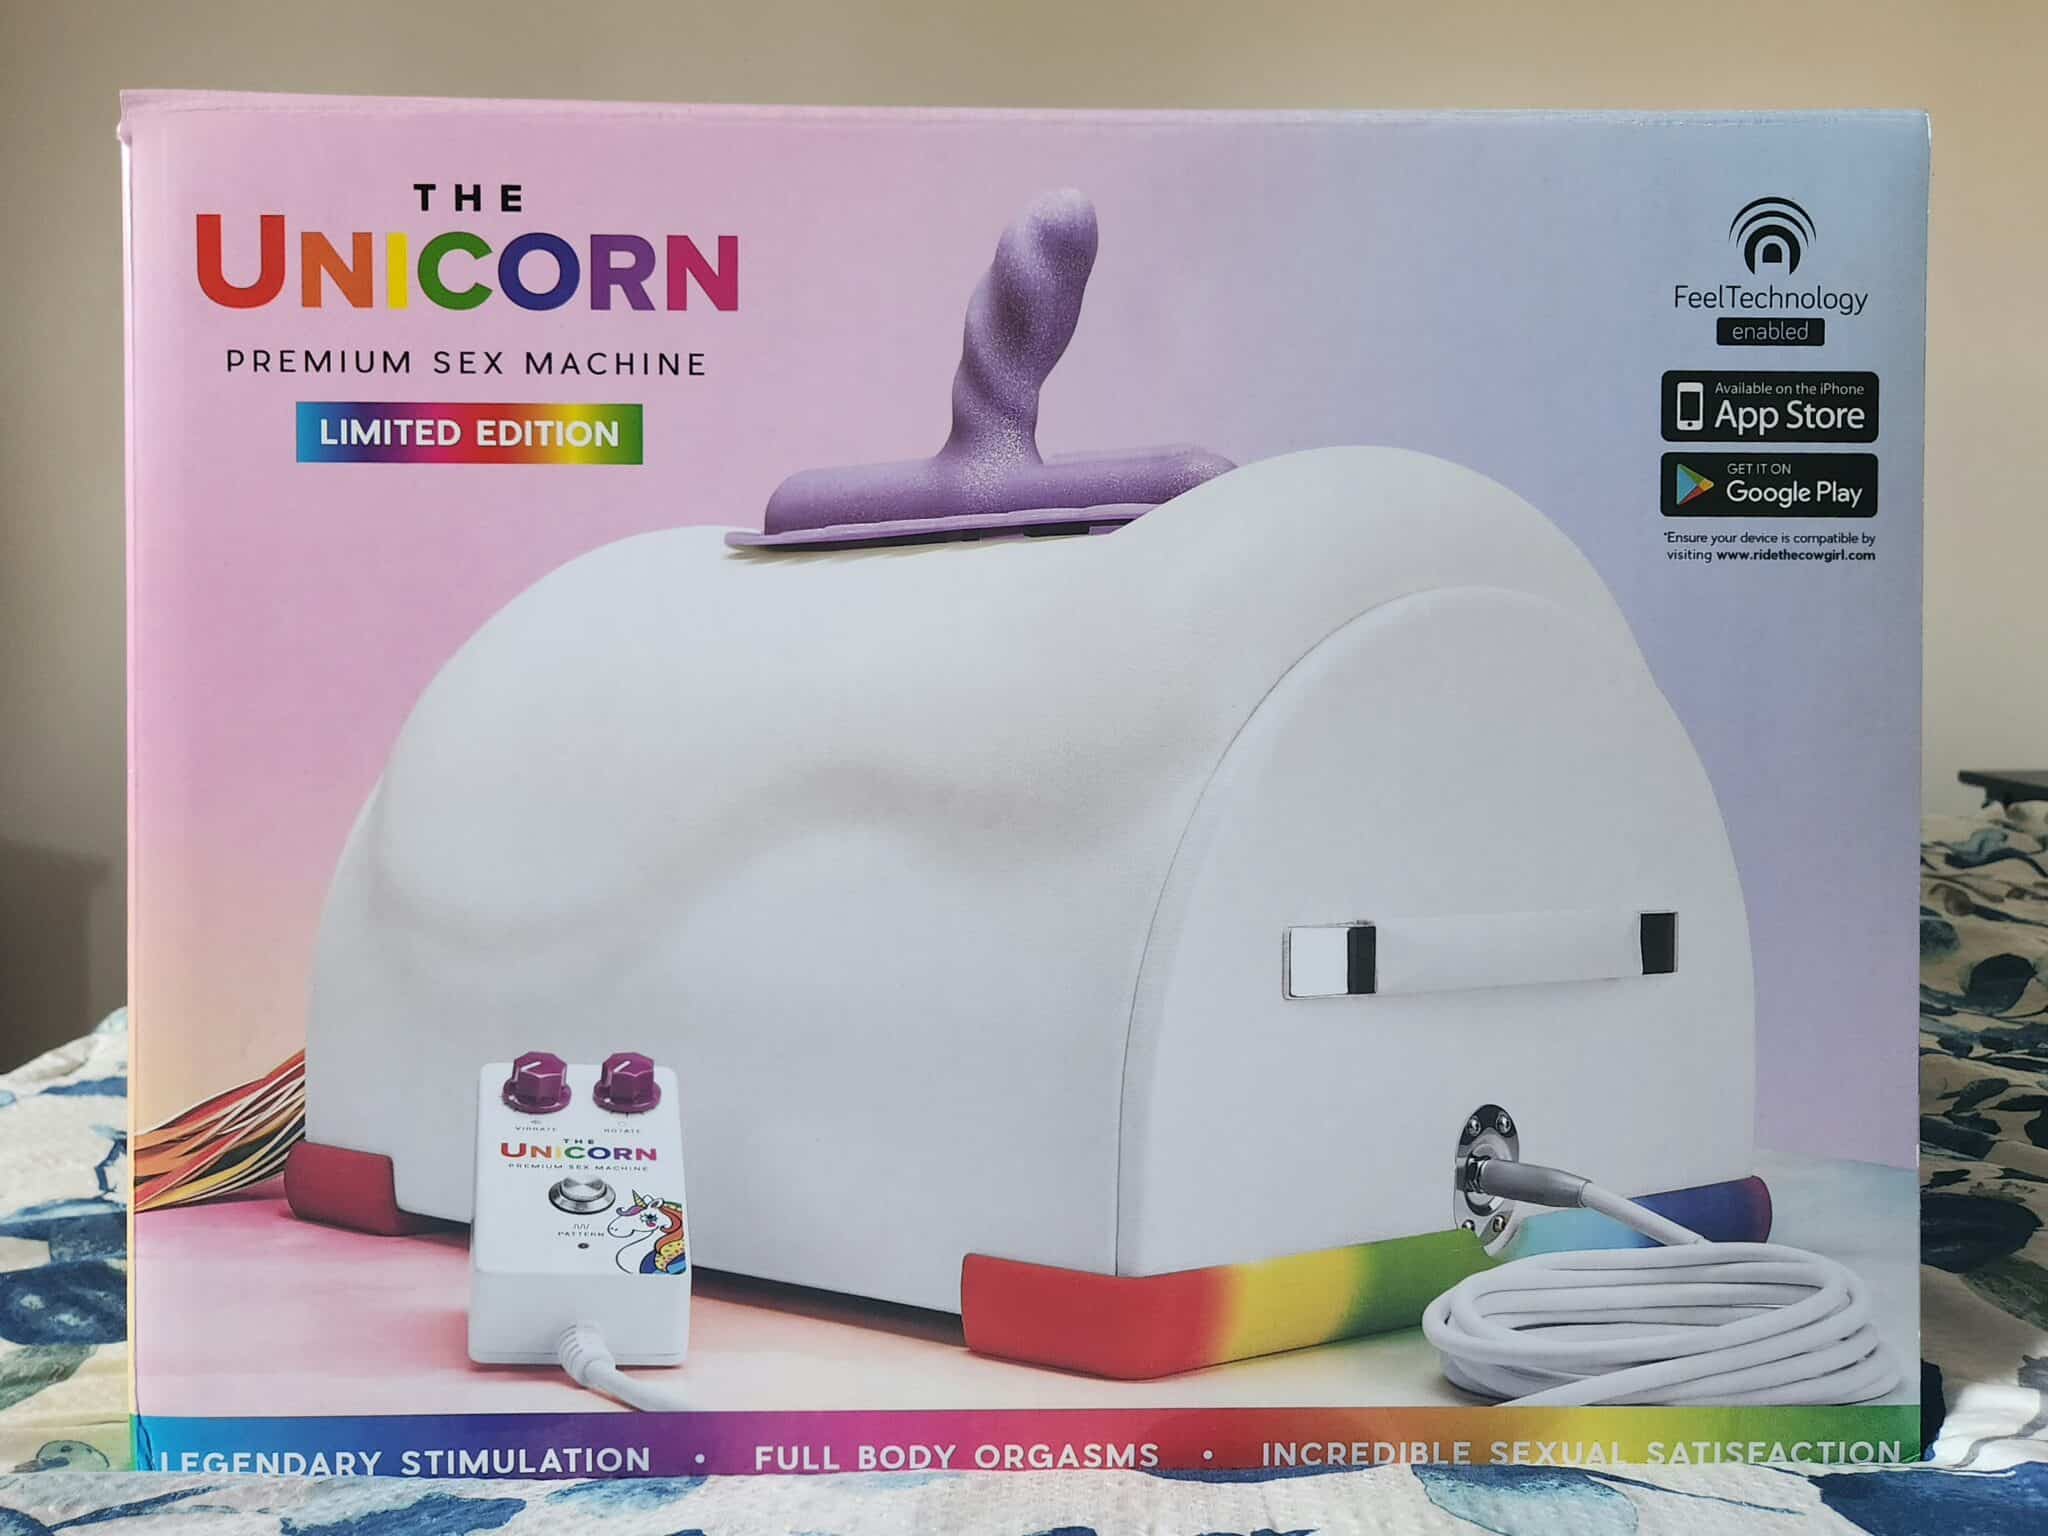 The Unicorn Premium Sex Machine A Closer Look at the The Unicorn Premium Sex Machine’s Packaging